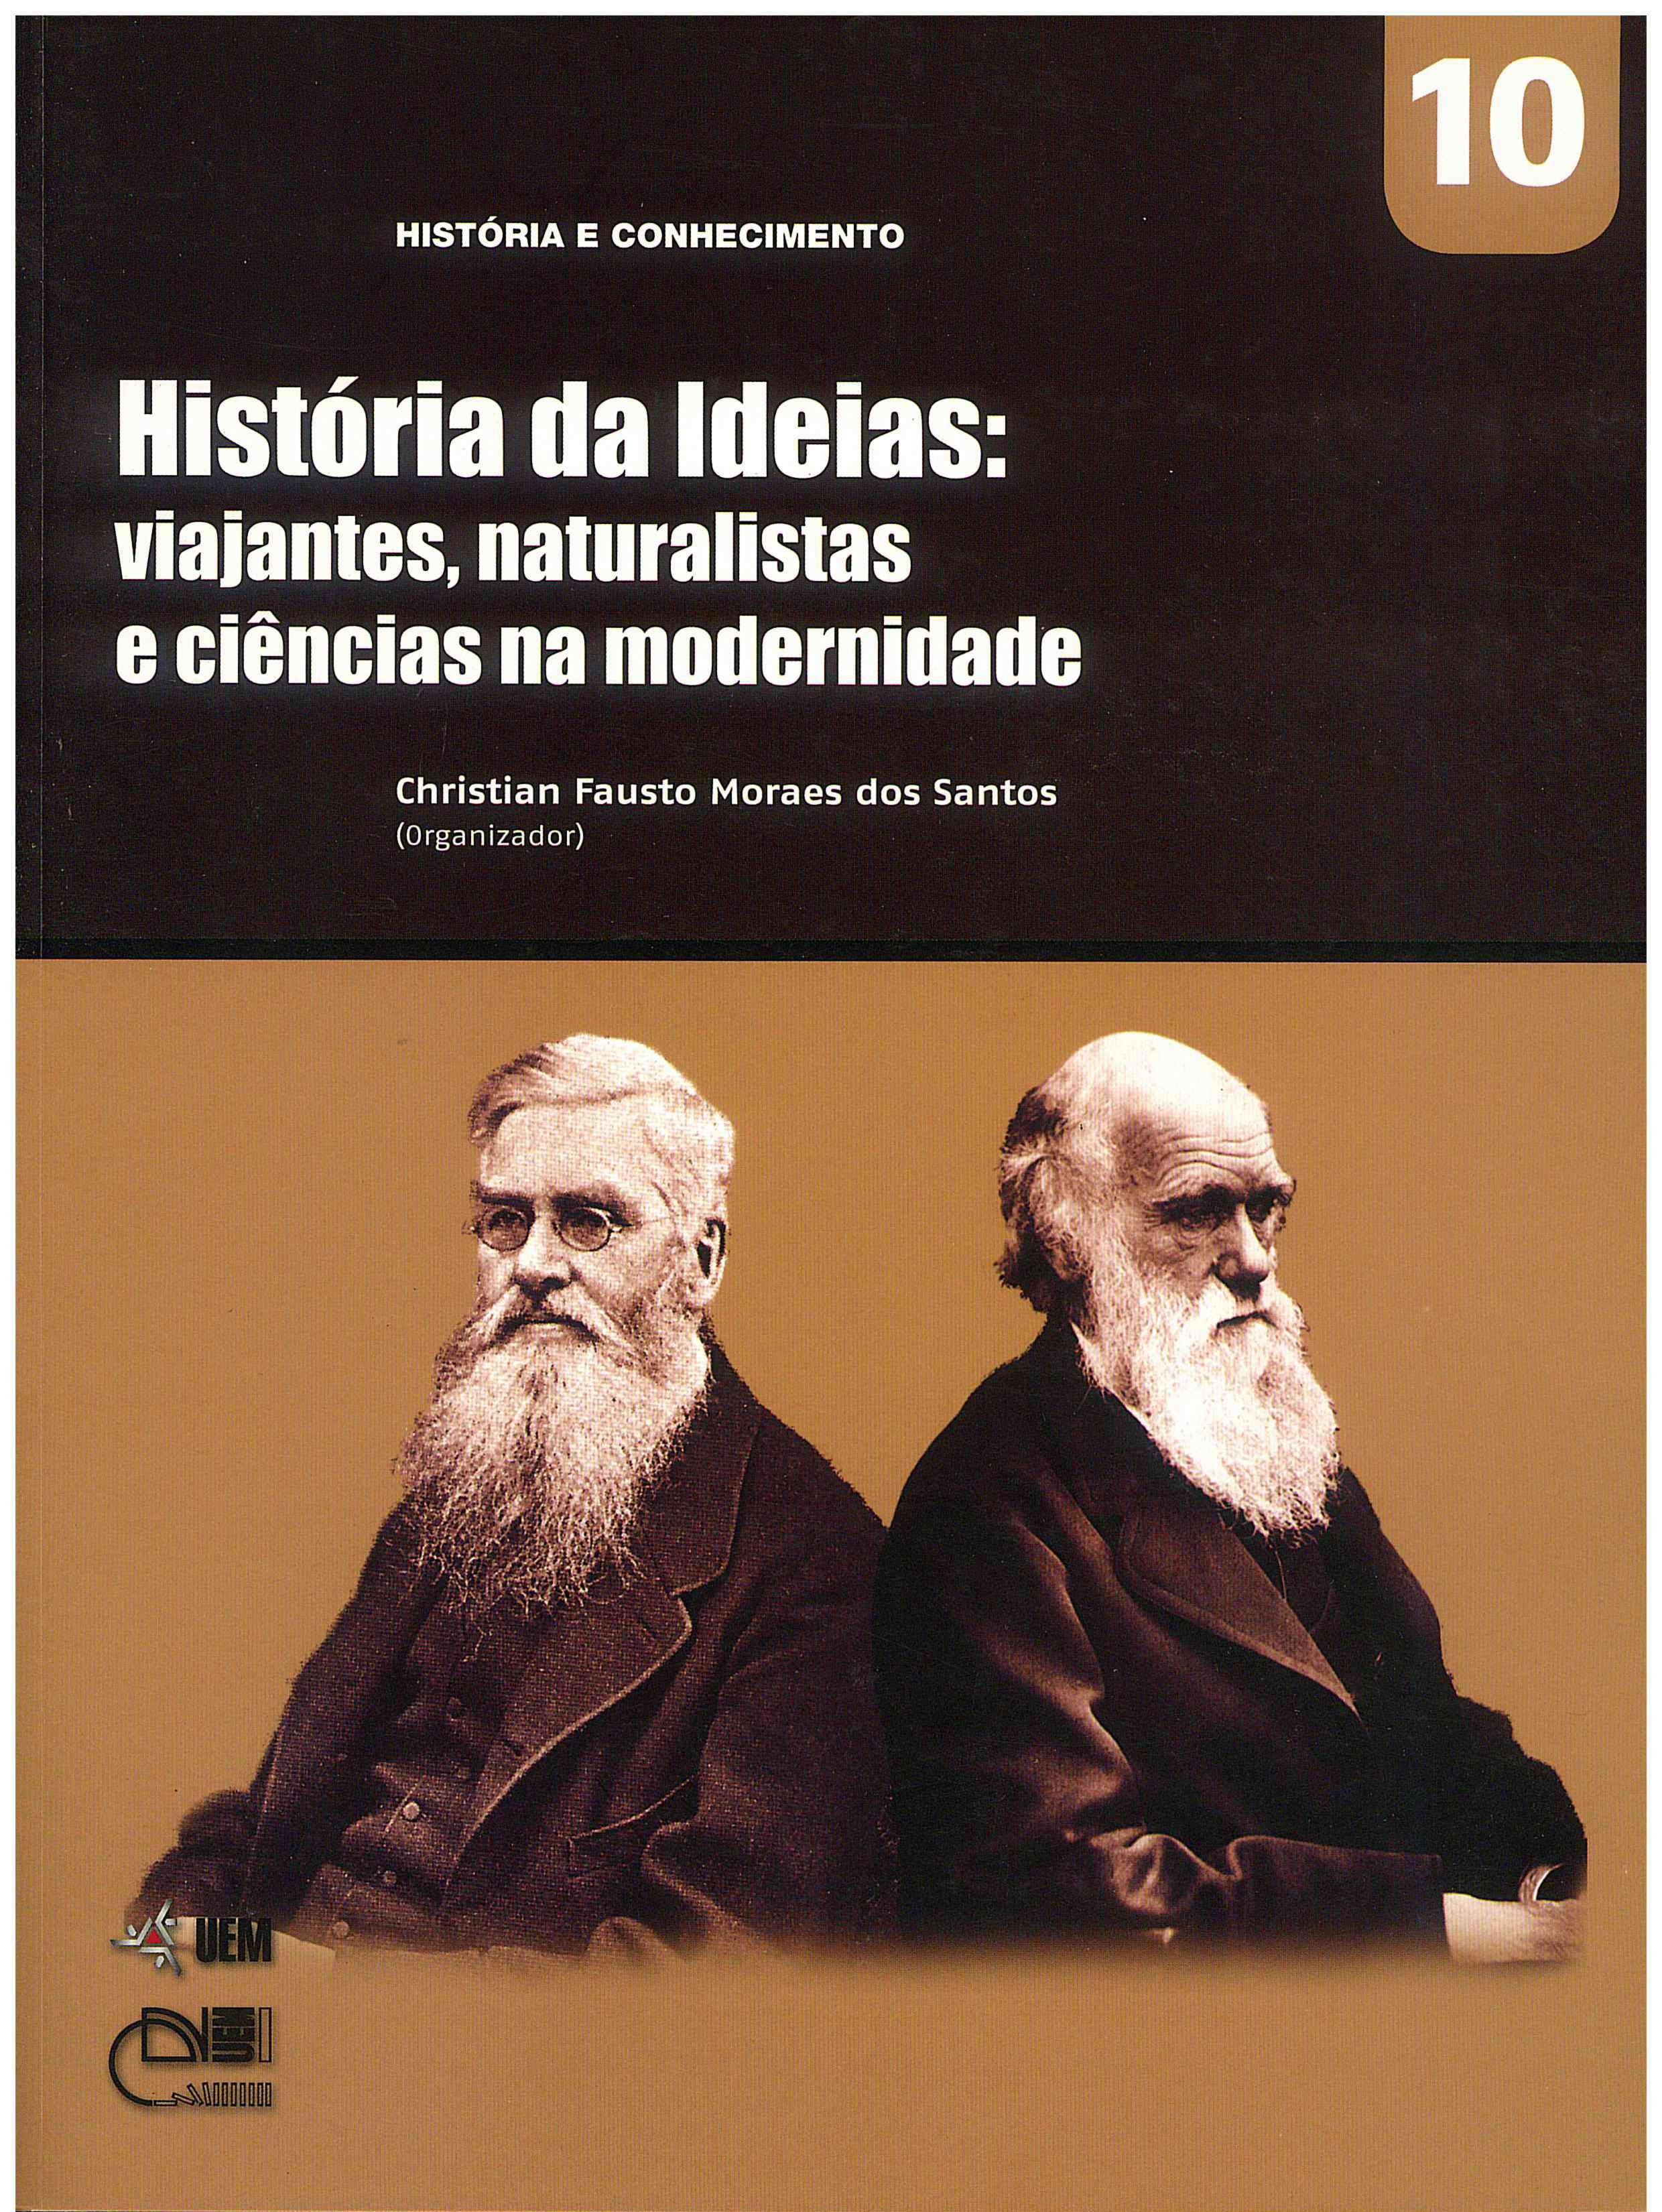 SANTOS, C. F. M. (Org.). História das Idéias: viajantes, naturalistas e ciências na modernidade